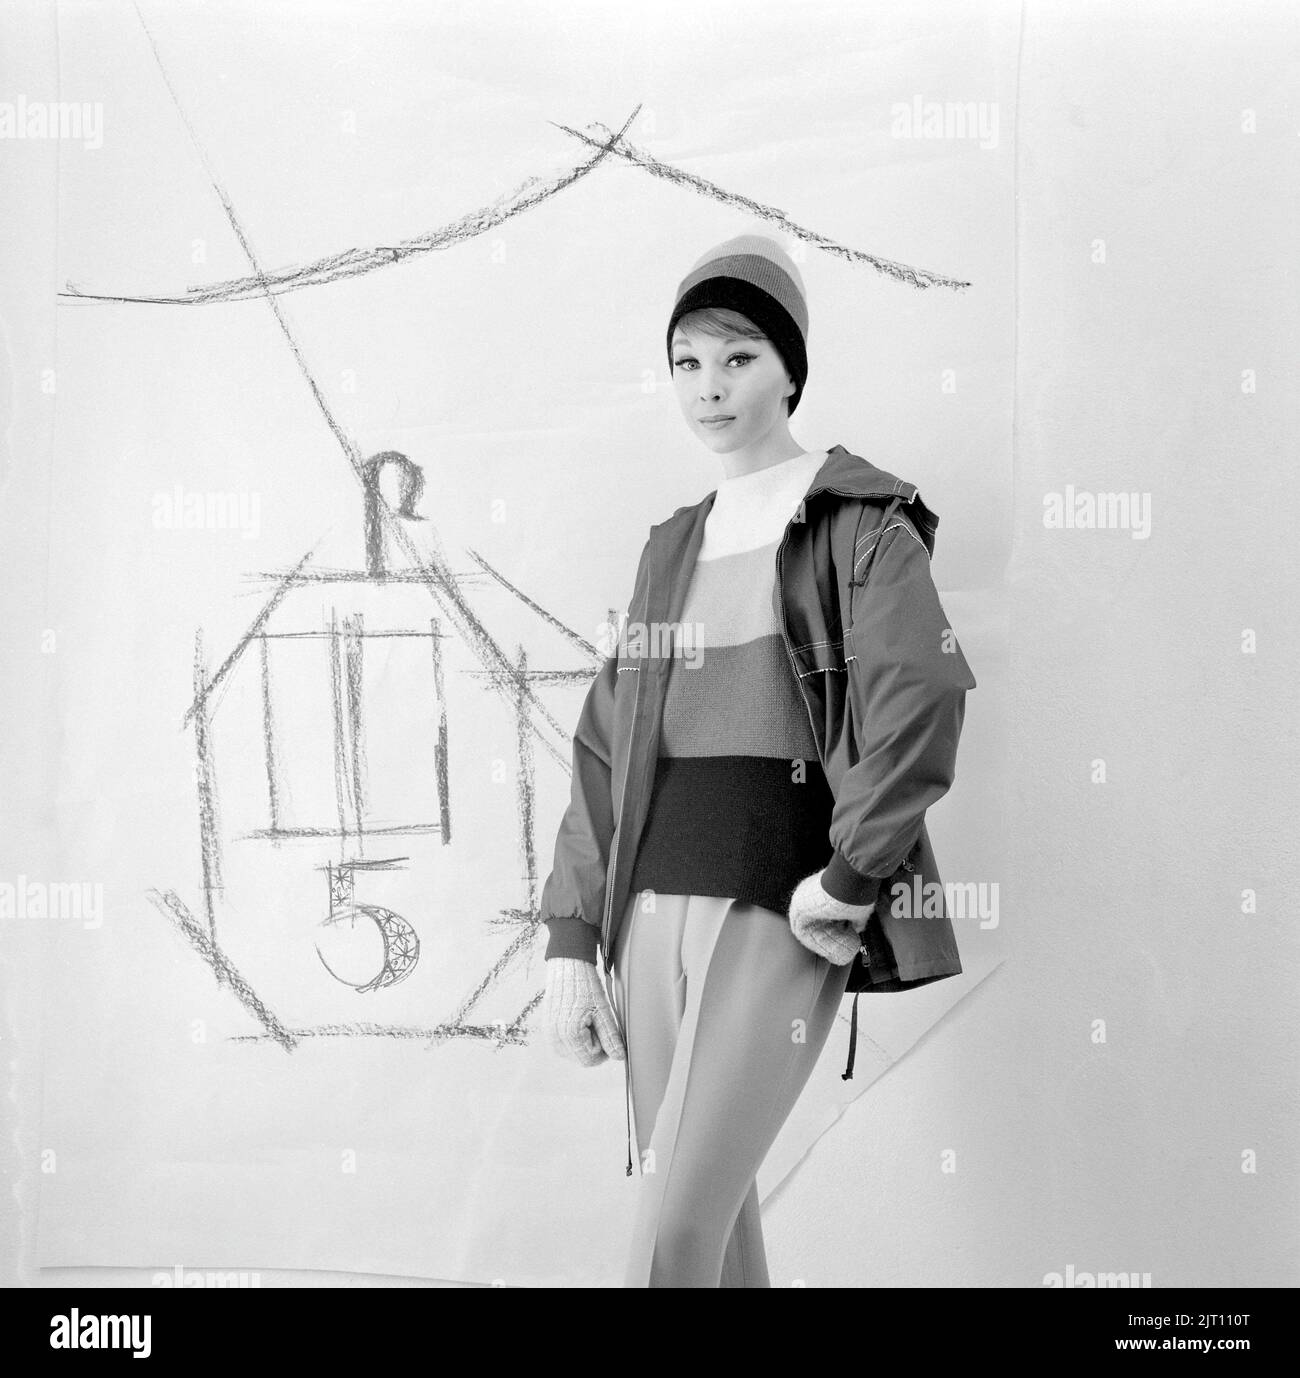 Dans le 1960s. Un modèle de mode, en 1960s vêtements d'hiver typiques dans un studio. Le pantalon est fabriqué en matière synthétique, tout comme la veste en nylon très pratique. Suède 1960s Banque D'Images